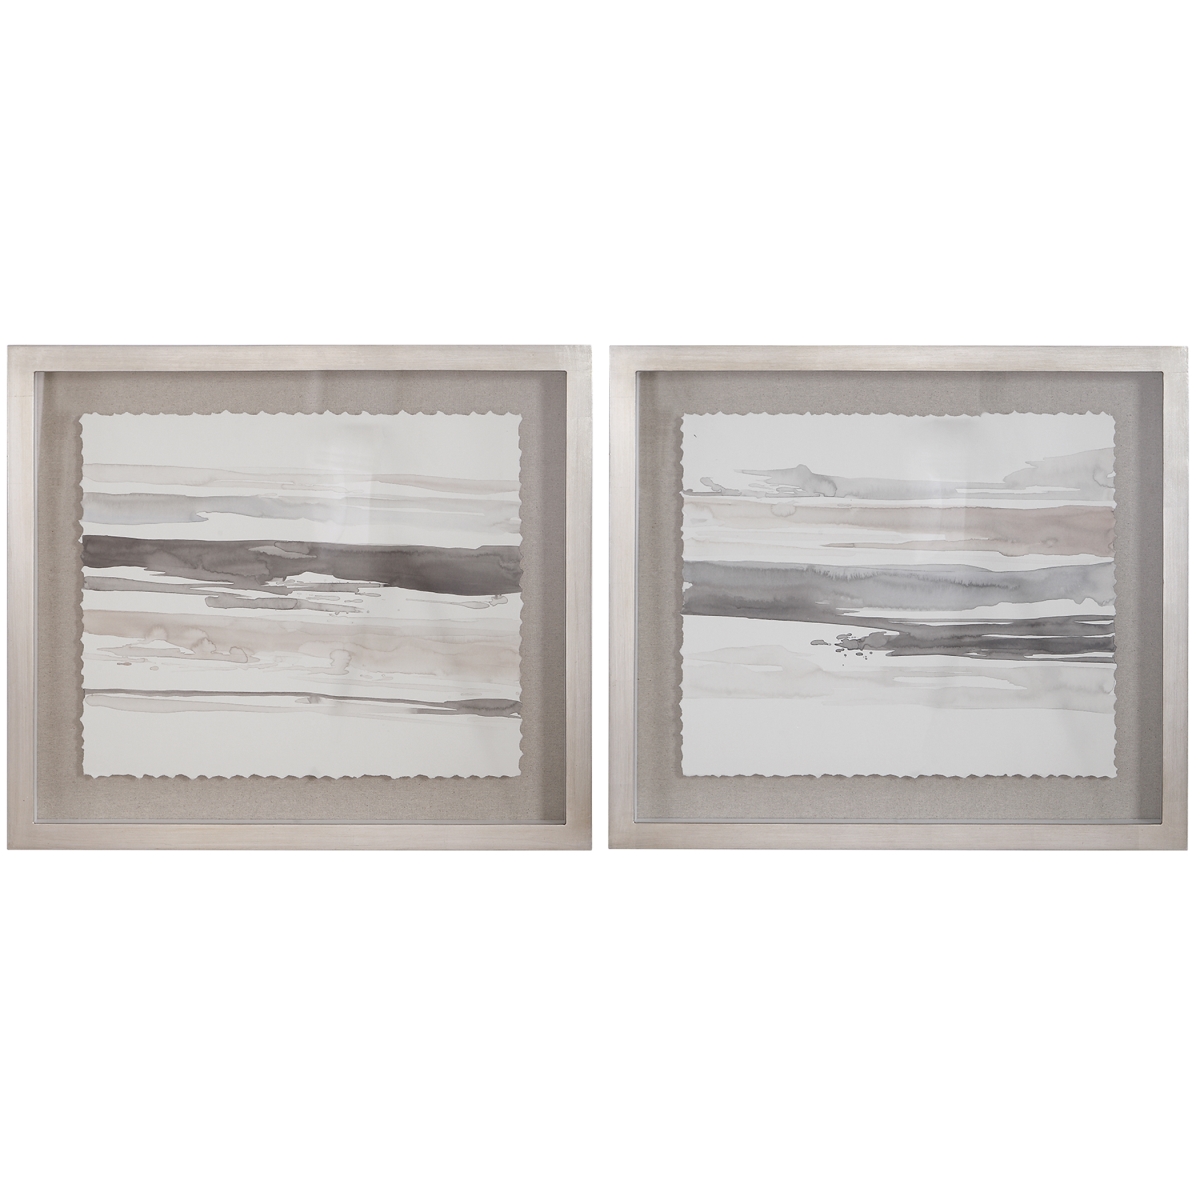 Picture of 212 Main 36114 Neutral Landscape Framed Prints - Set of 2